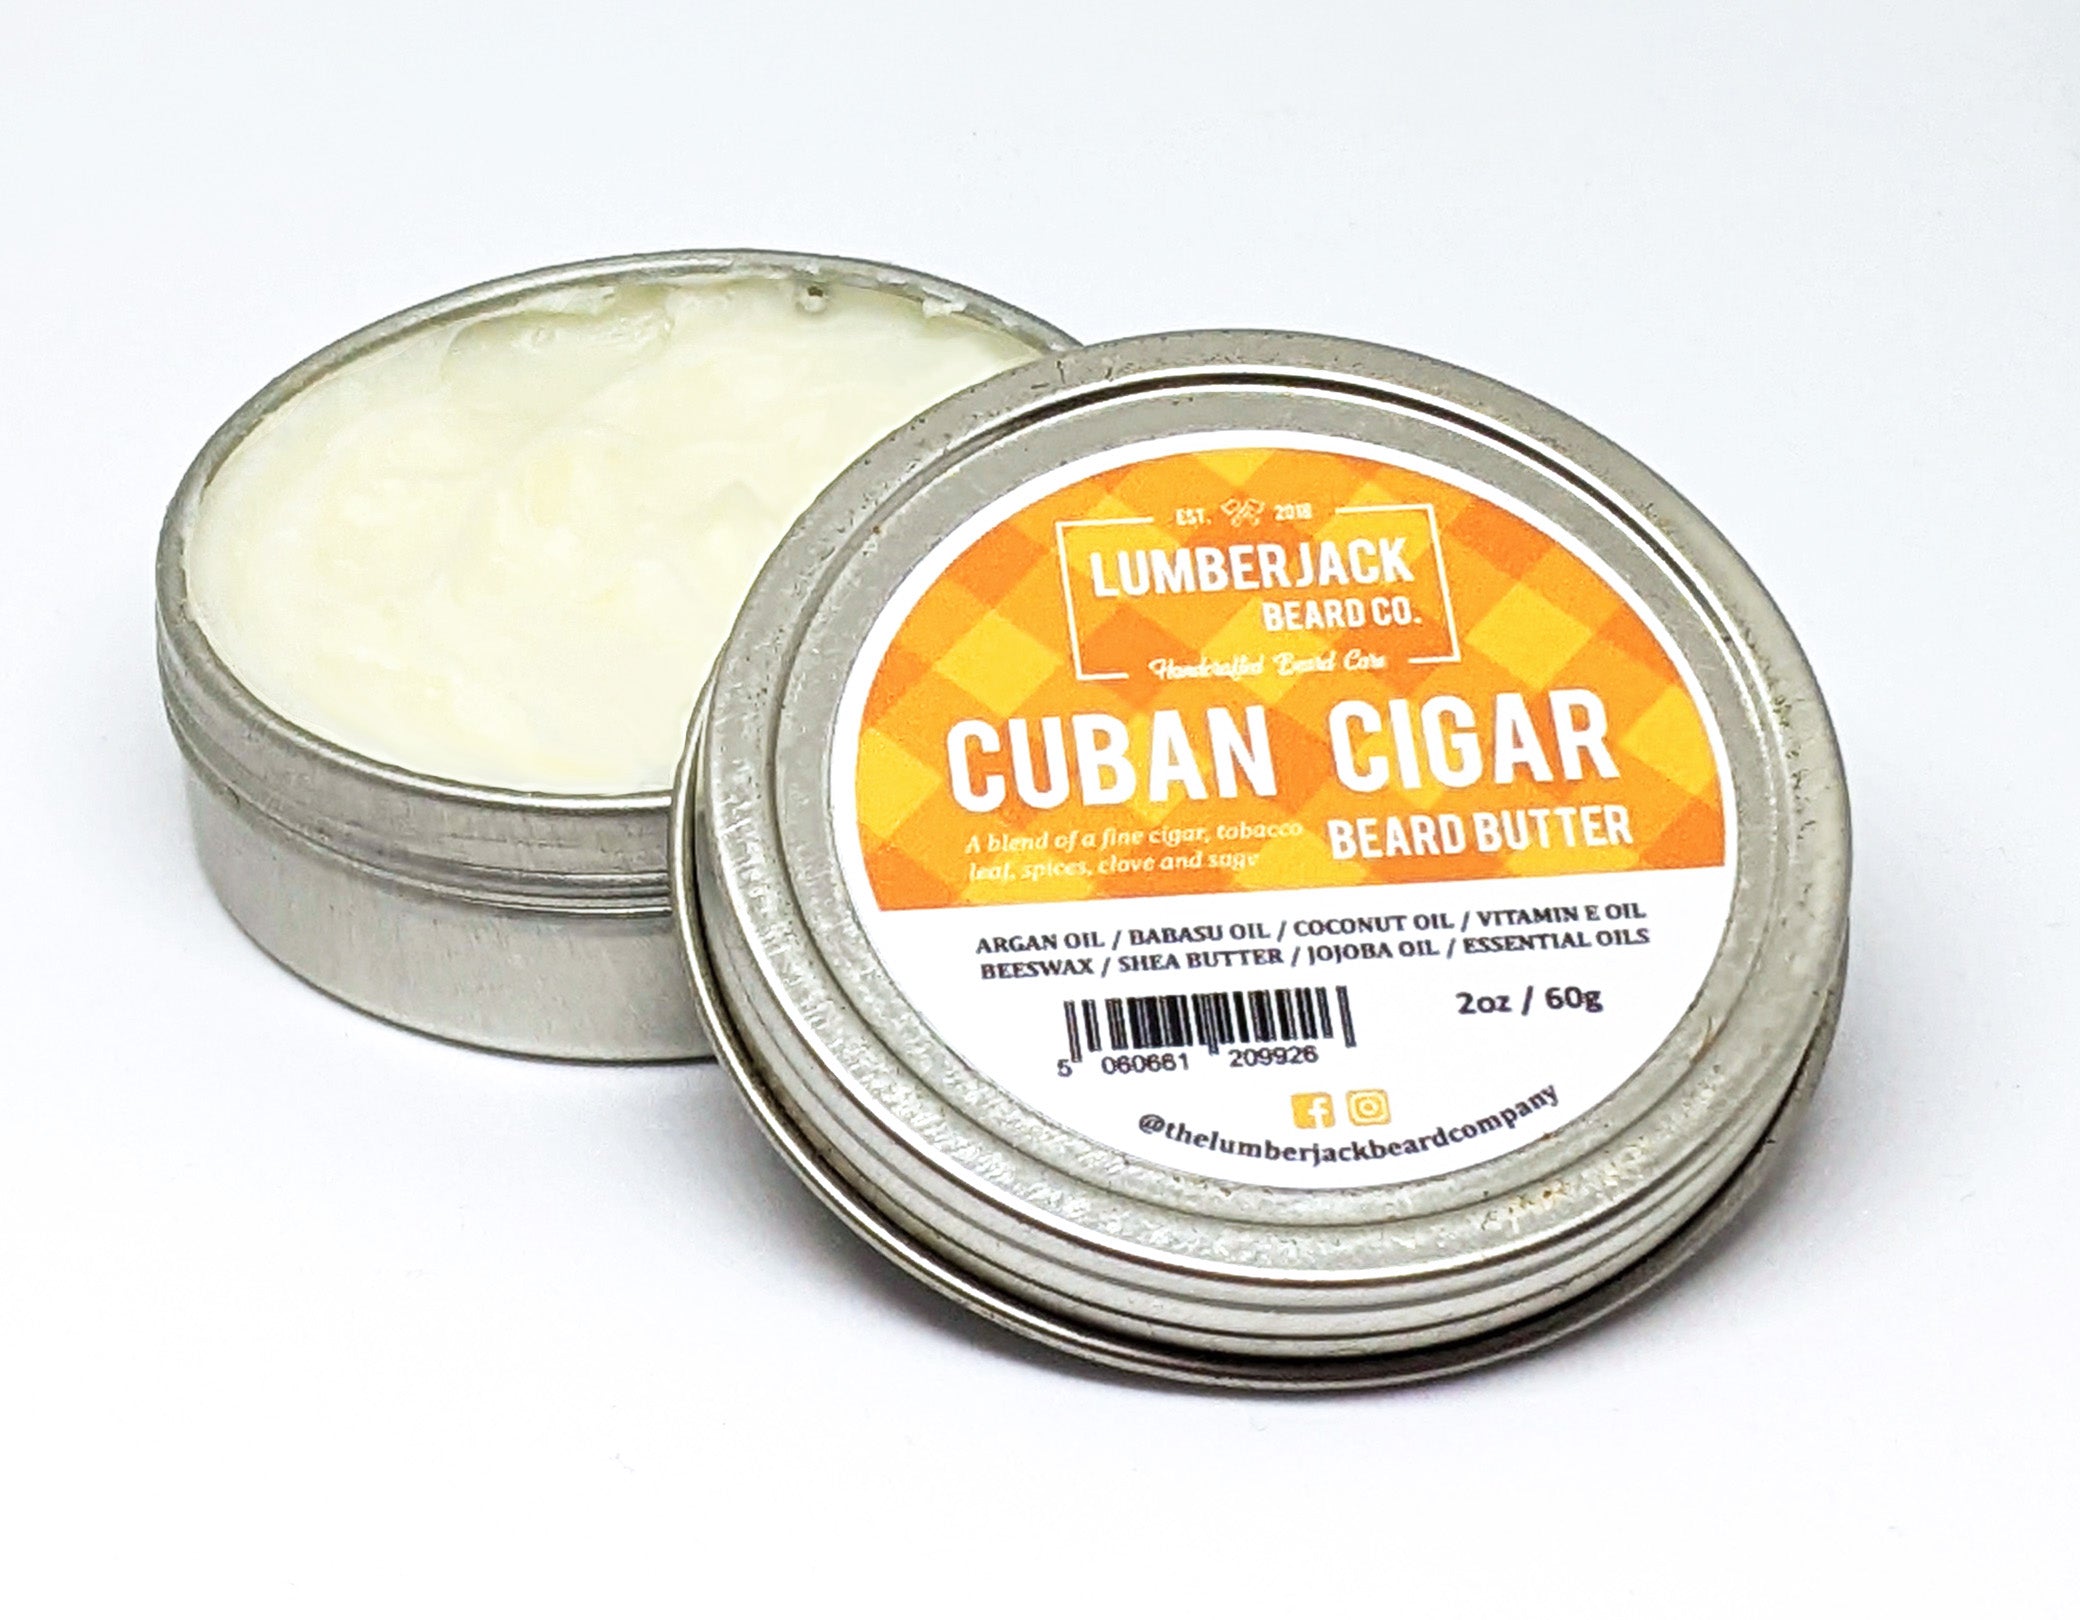 CUBAN CIGAR BEARD BUTTER